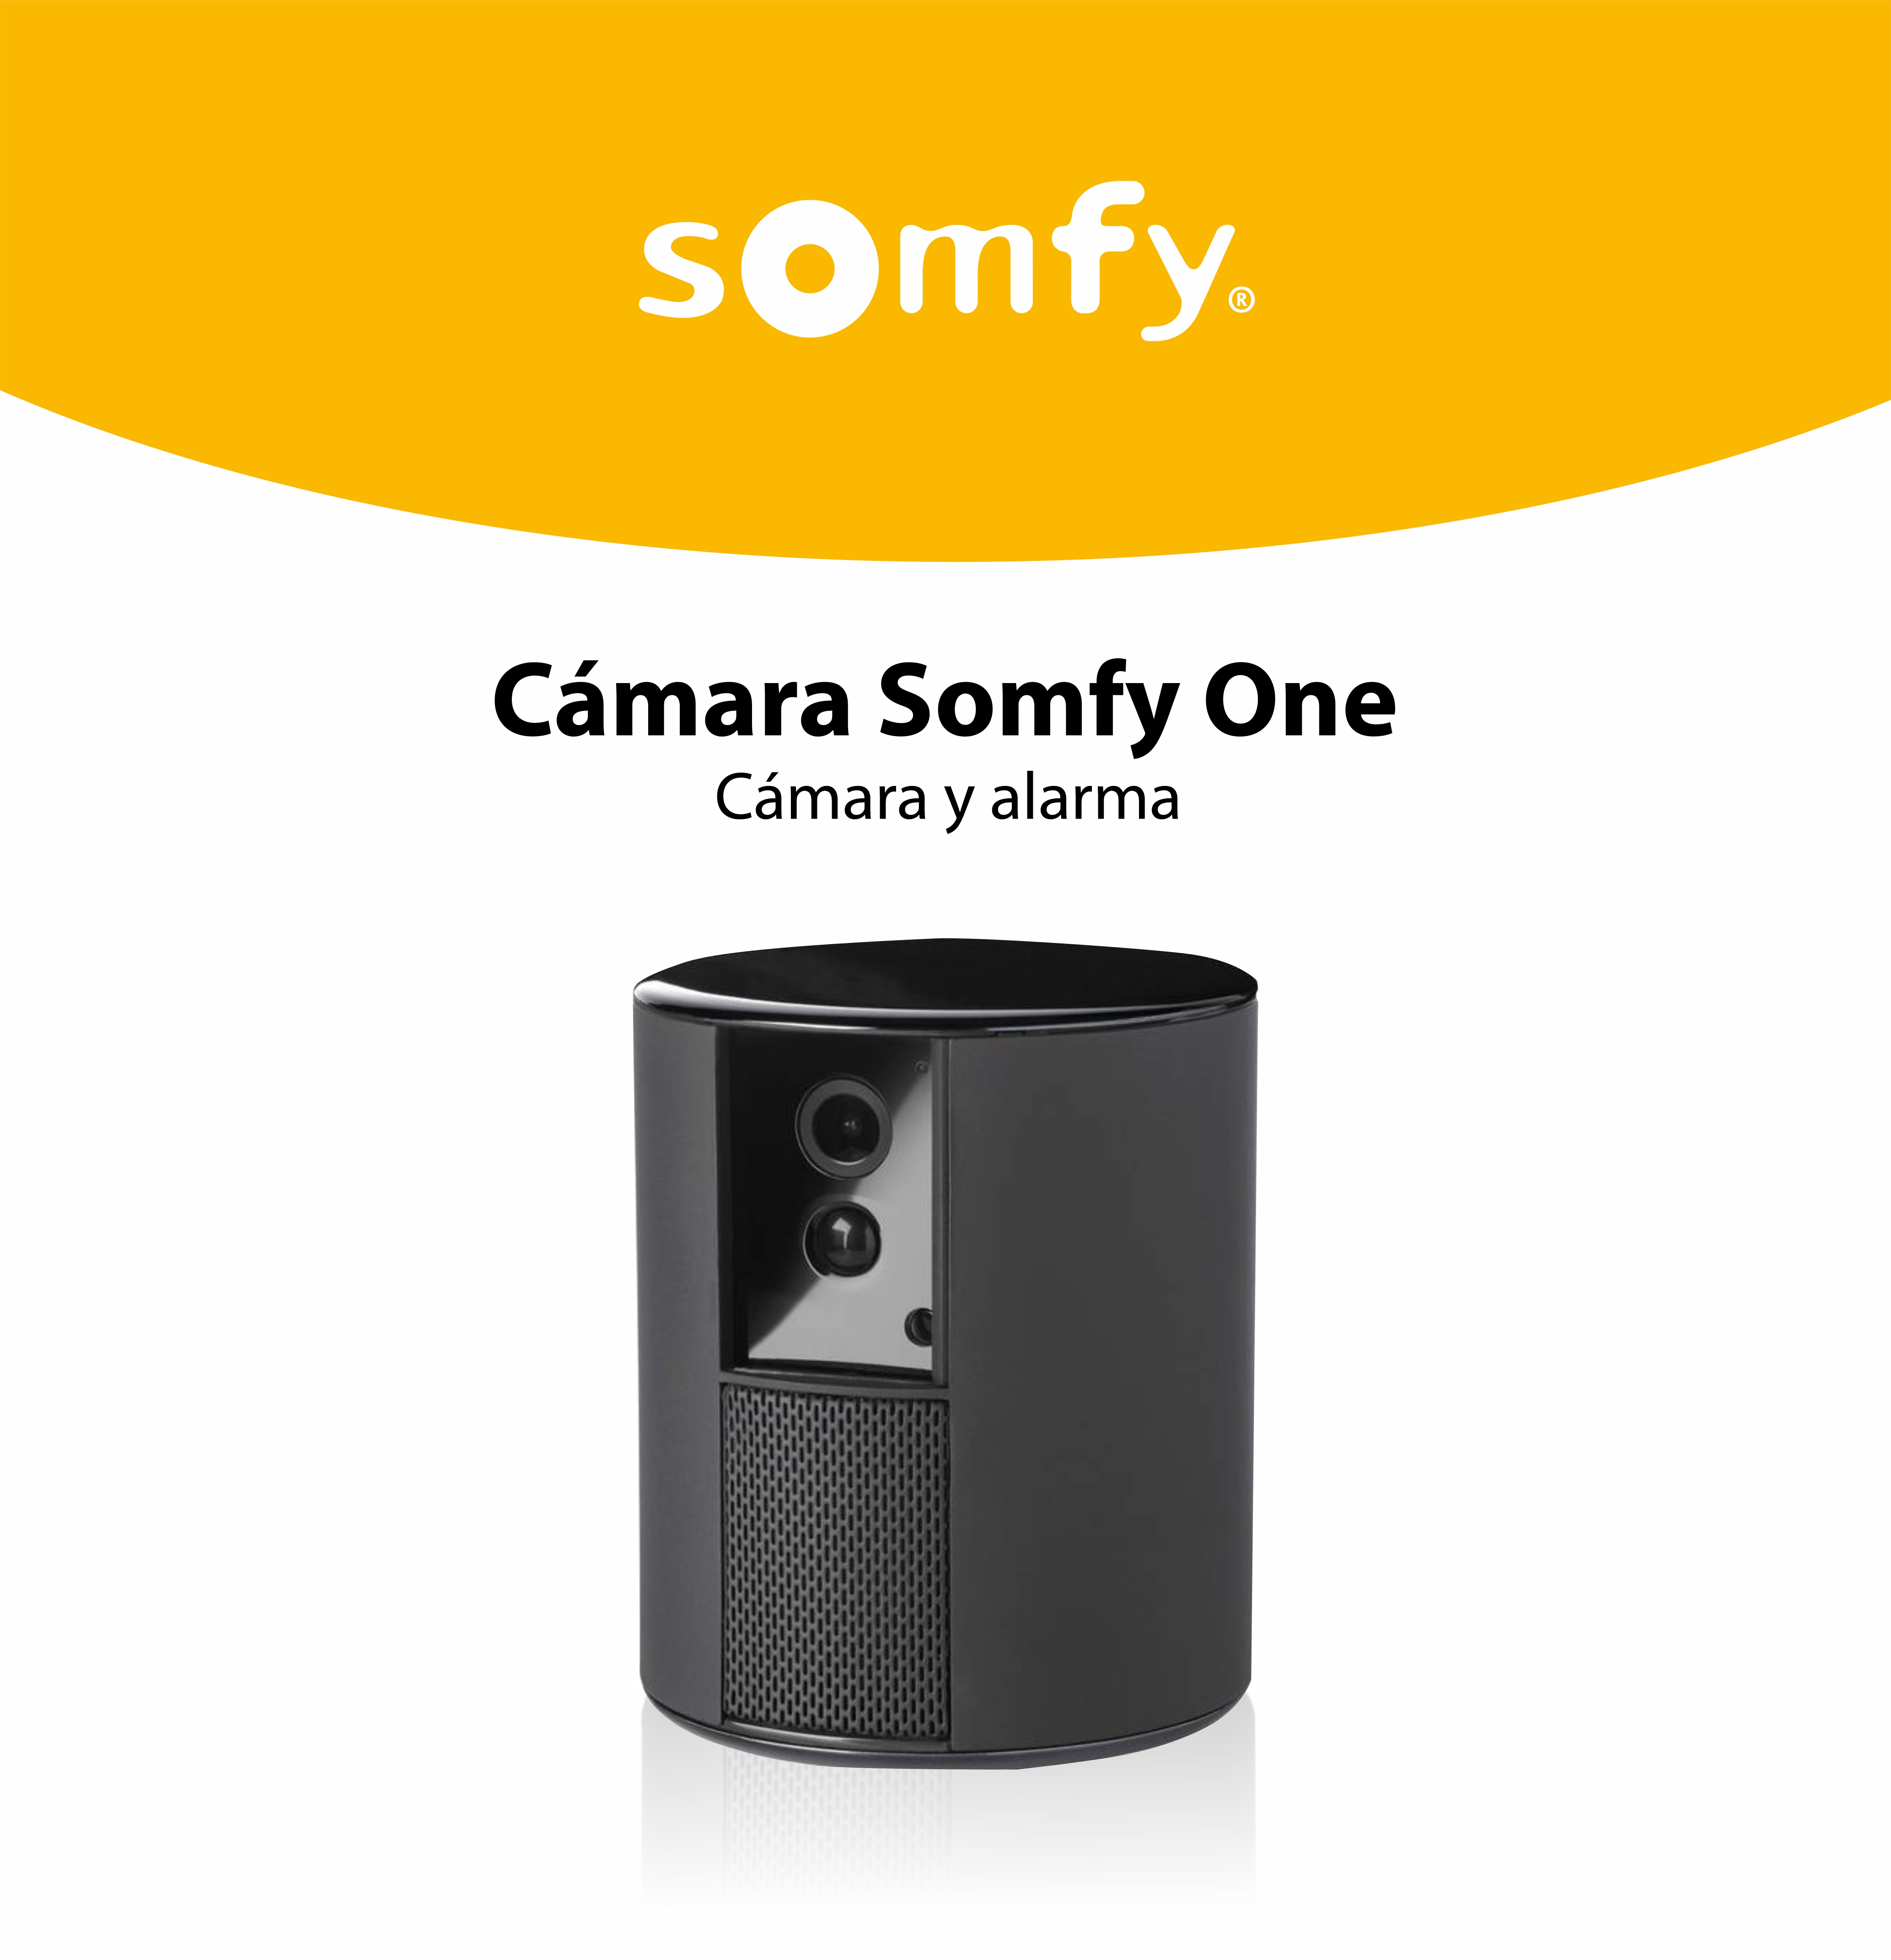 Cámara de vigilancia Somfy One, Full HD, Alarma y sirena, WiFi, Bluetooth 4.0, Detector de movimiento